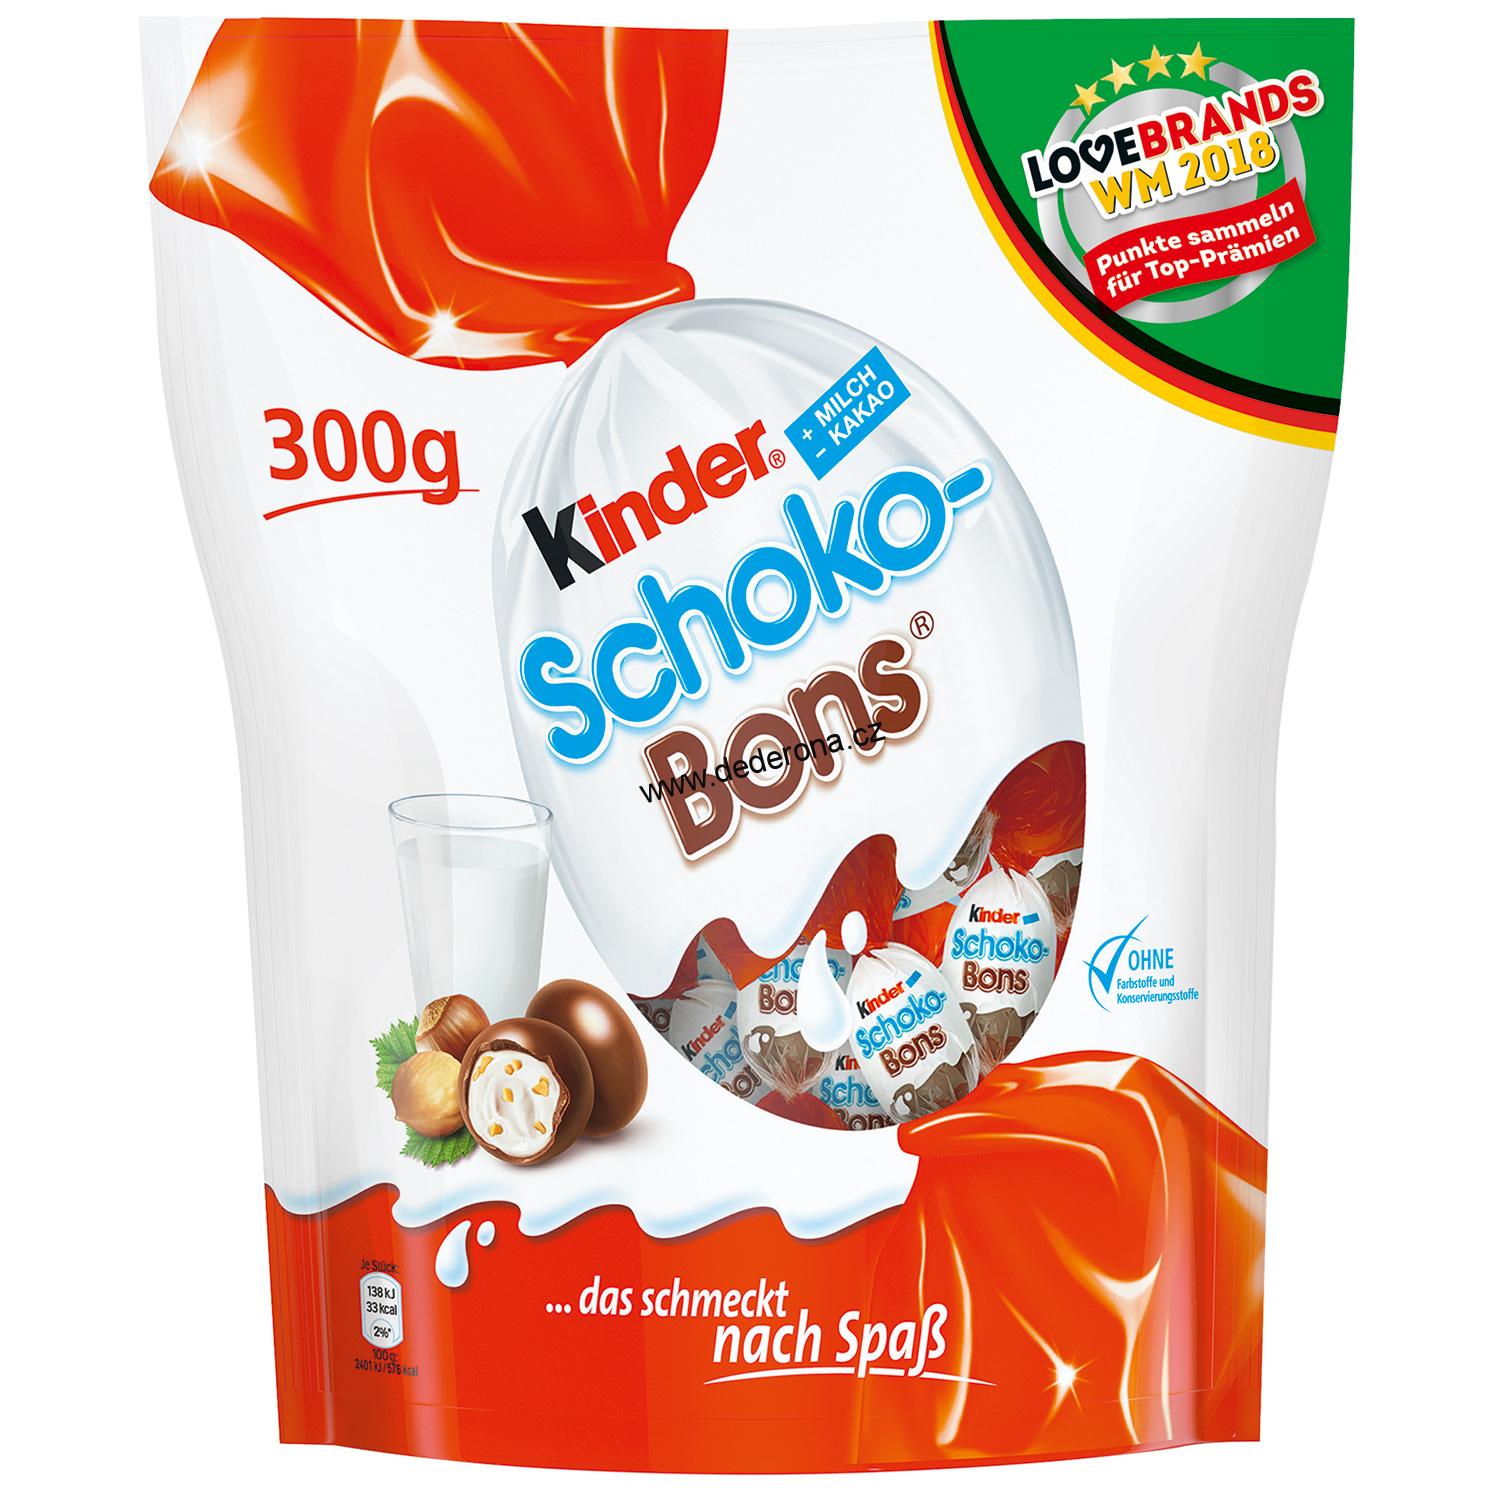 Kinder - Schoko-Bons 300g - Německo!